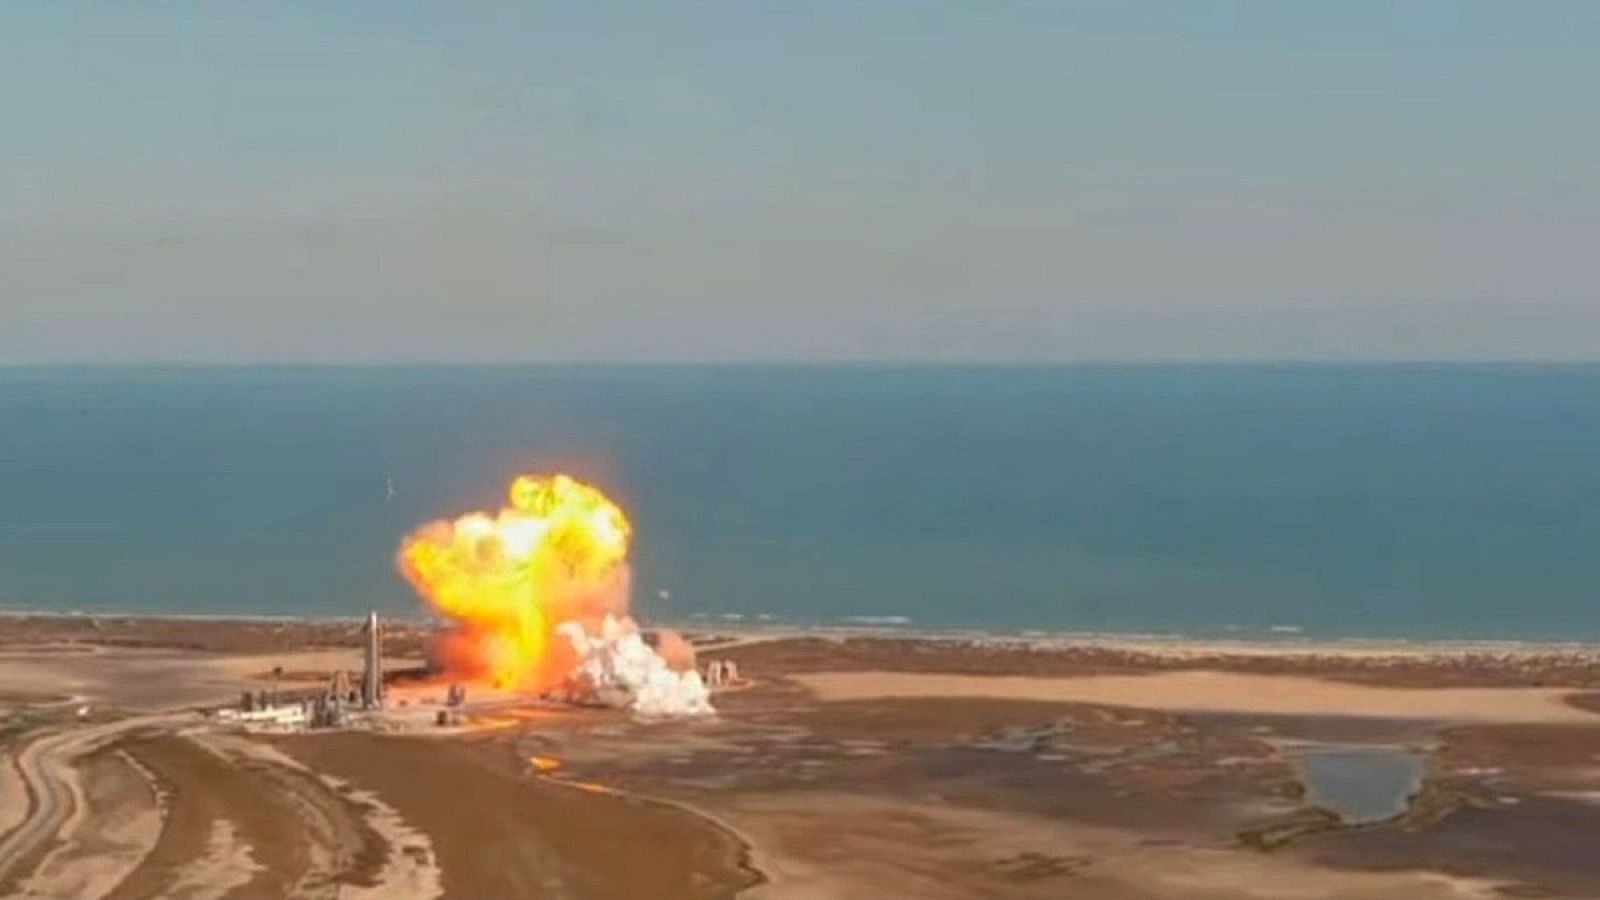 El prototipo de una nave de SpaceX explota en un aterrizaje de prueba